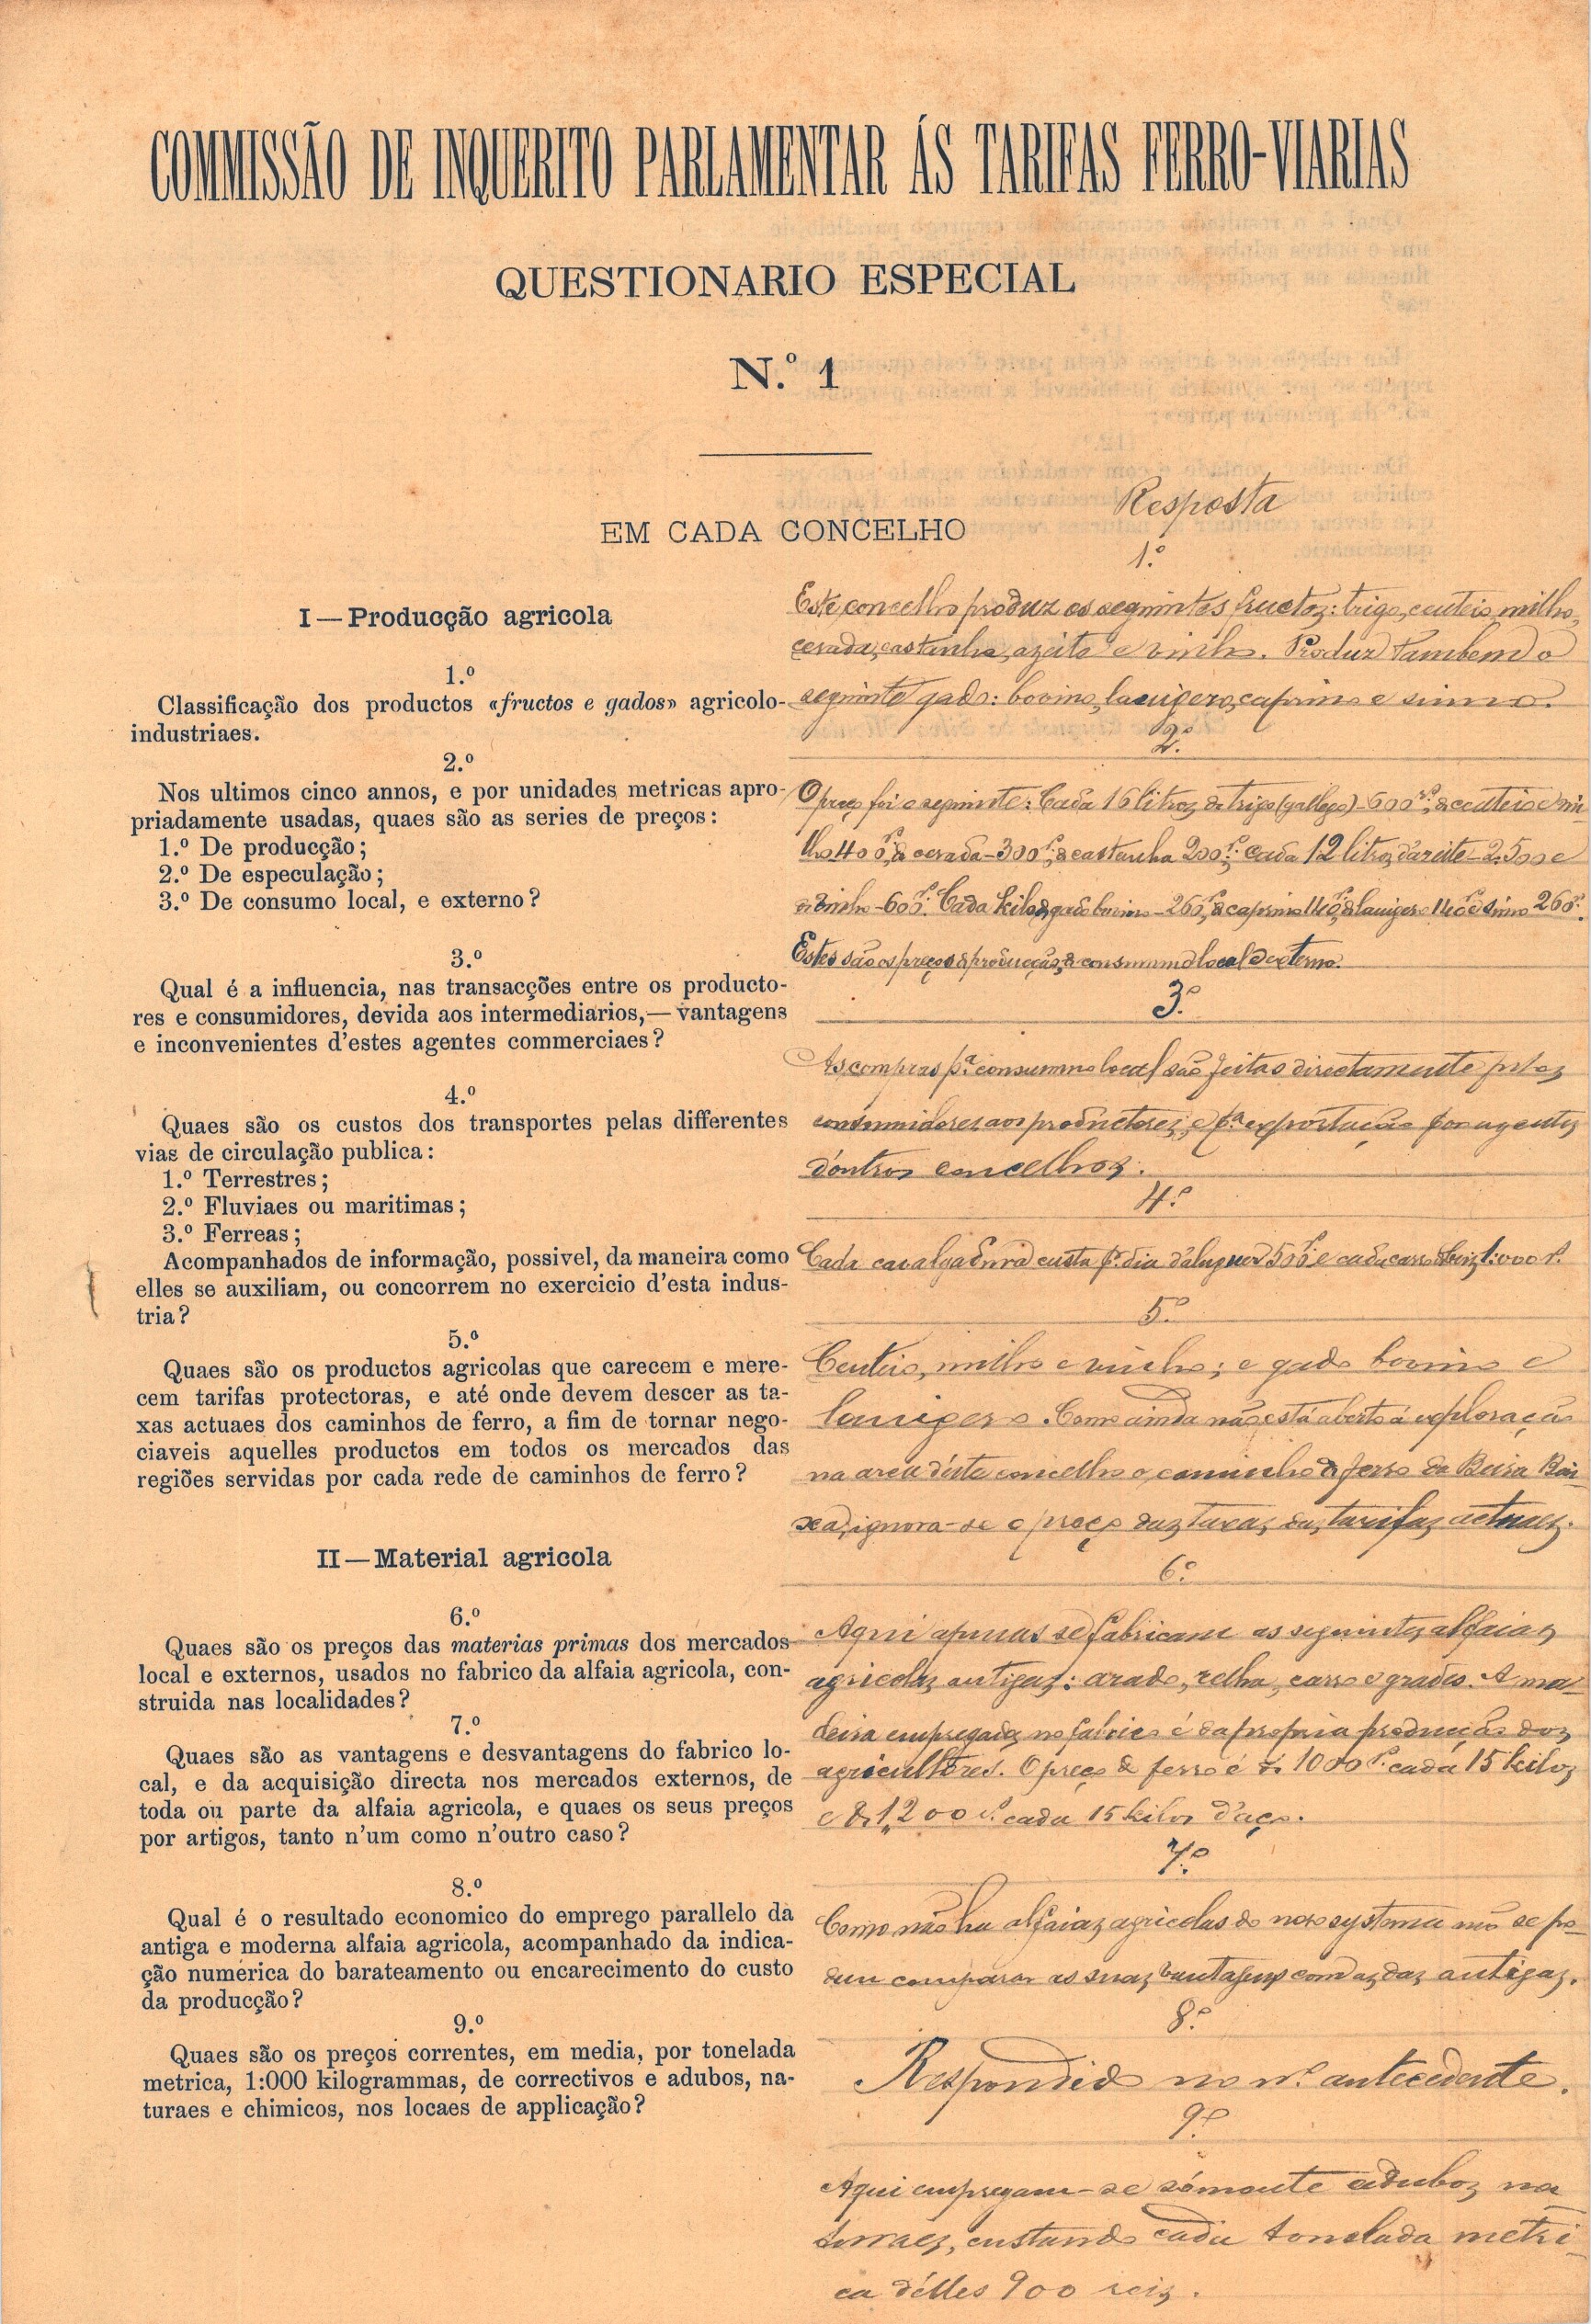 Resposta ao questionário da Comissão. Concelho de Belmonte, Distrito de Castelo Branco. 14 de novembro de 1891. Cota AHP: Secção I/II, cx. 488, mç. 406, doc. 87.